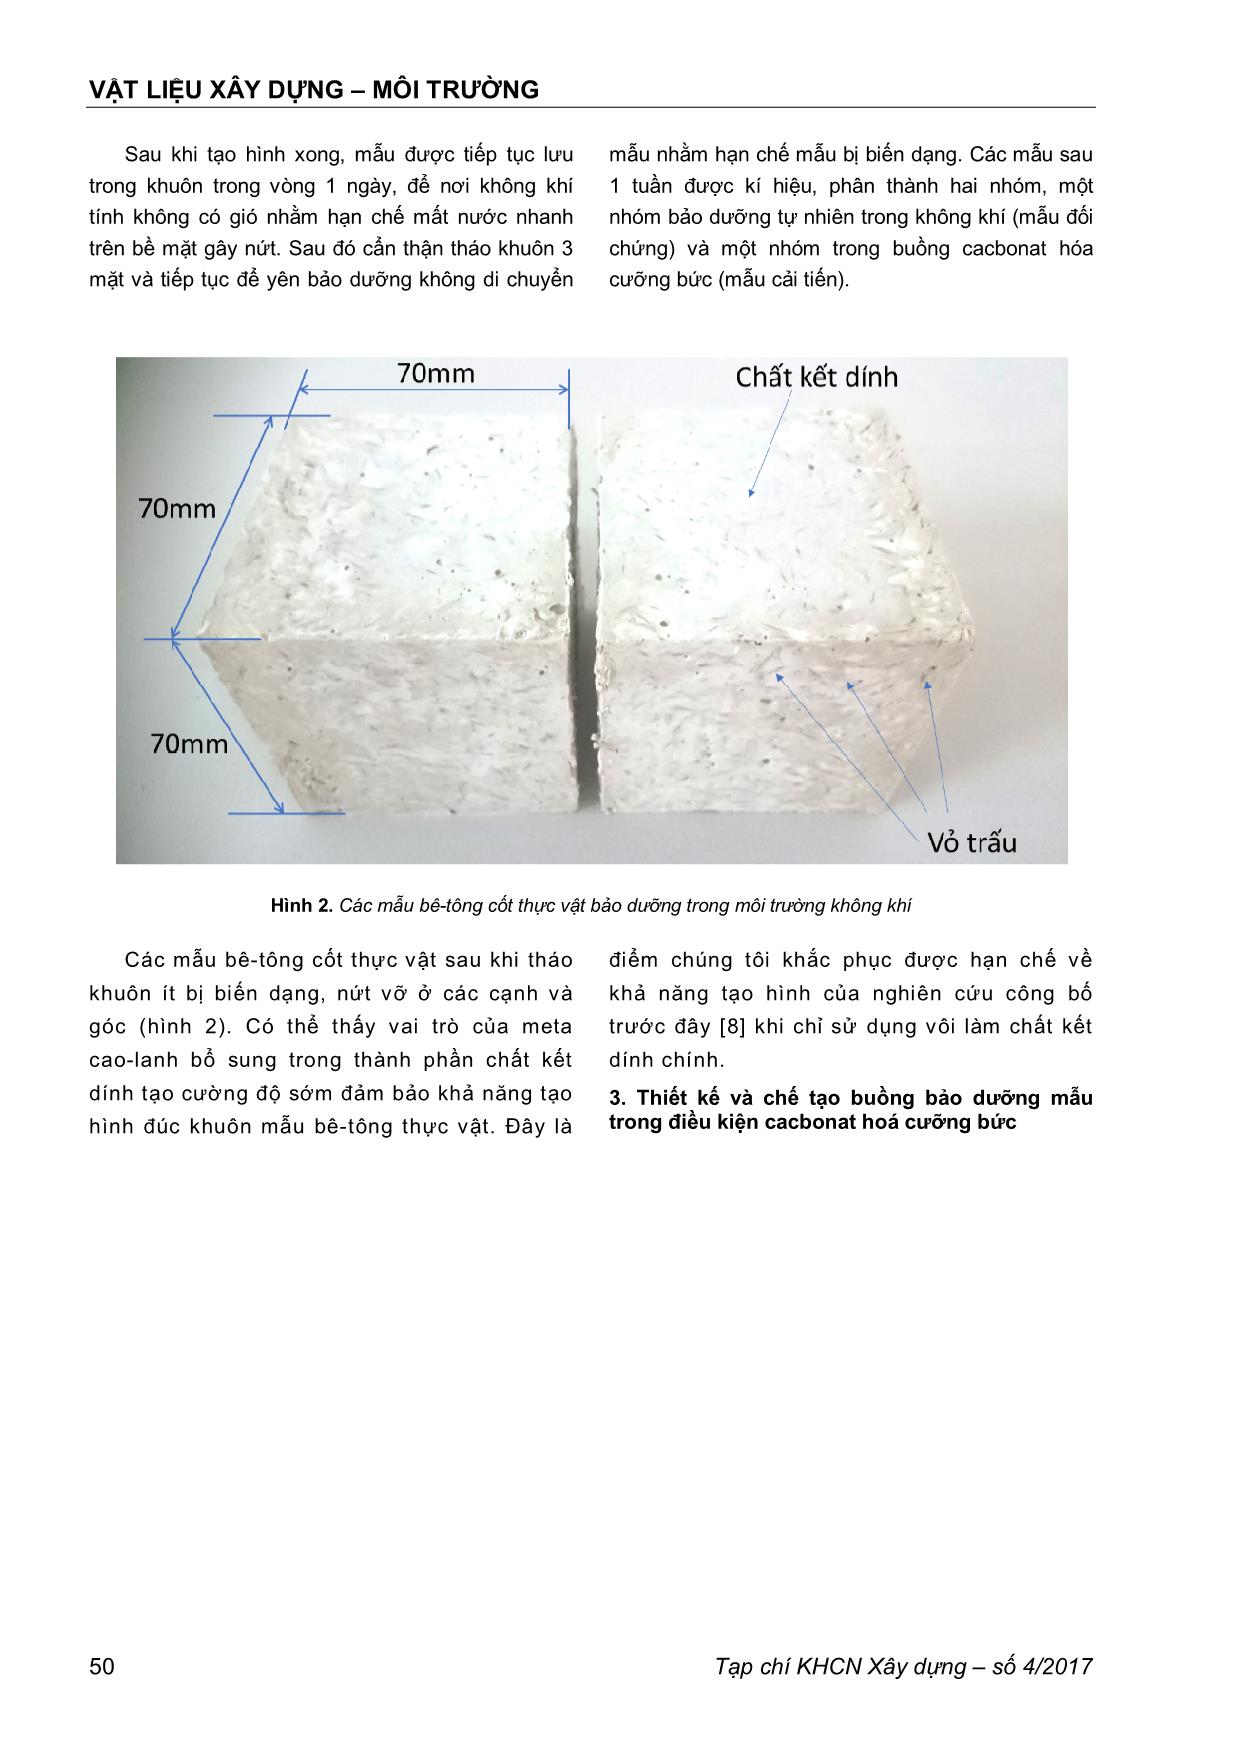 Thực nghiệm và đánh giá quá trình cacbonat hoá cưỡng bức vật liệu bê -tông cốt thực vật trang 3